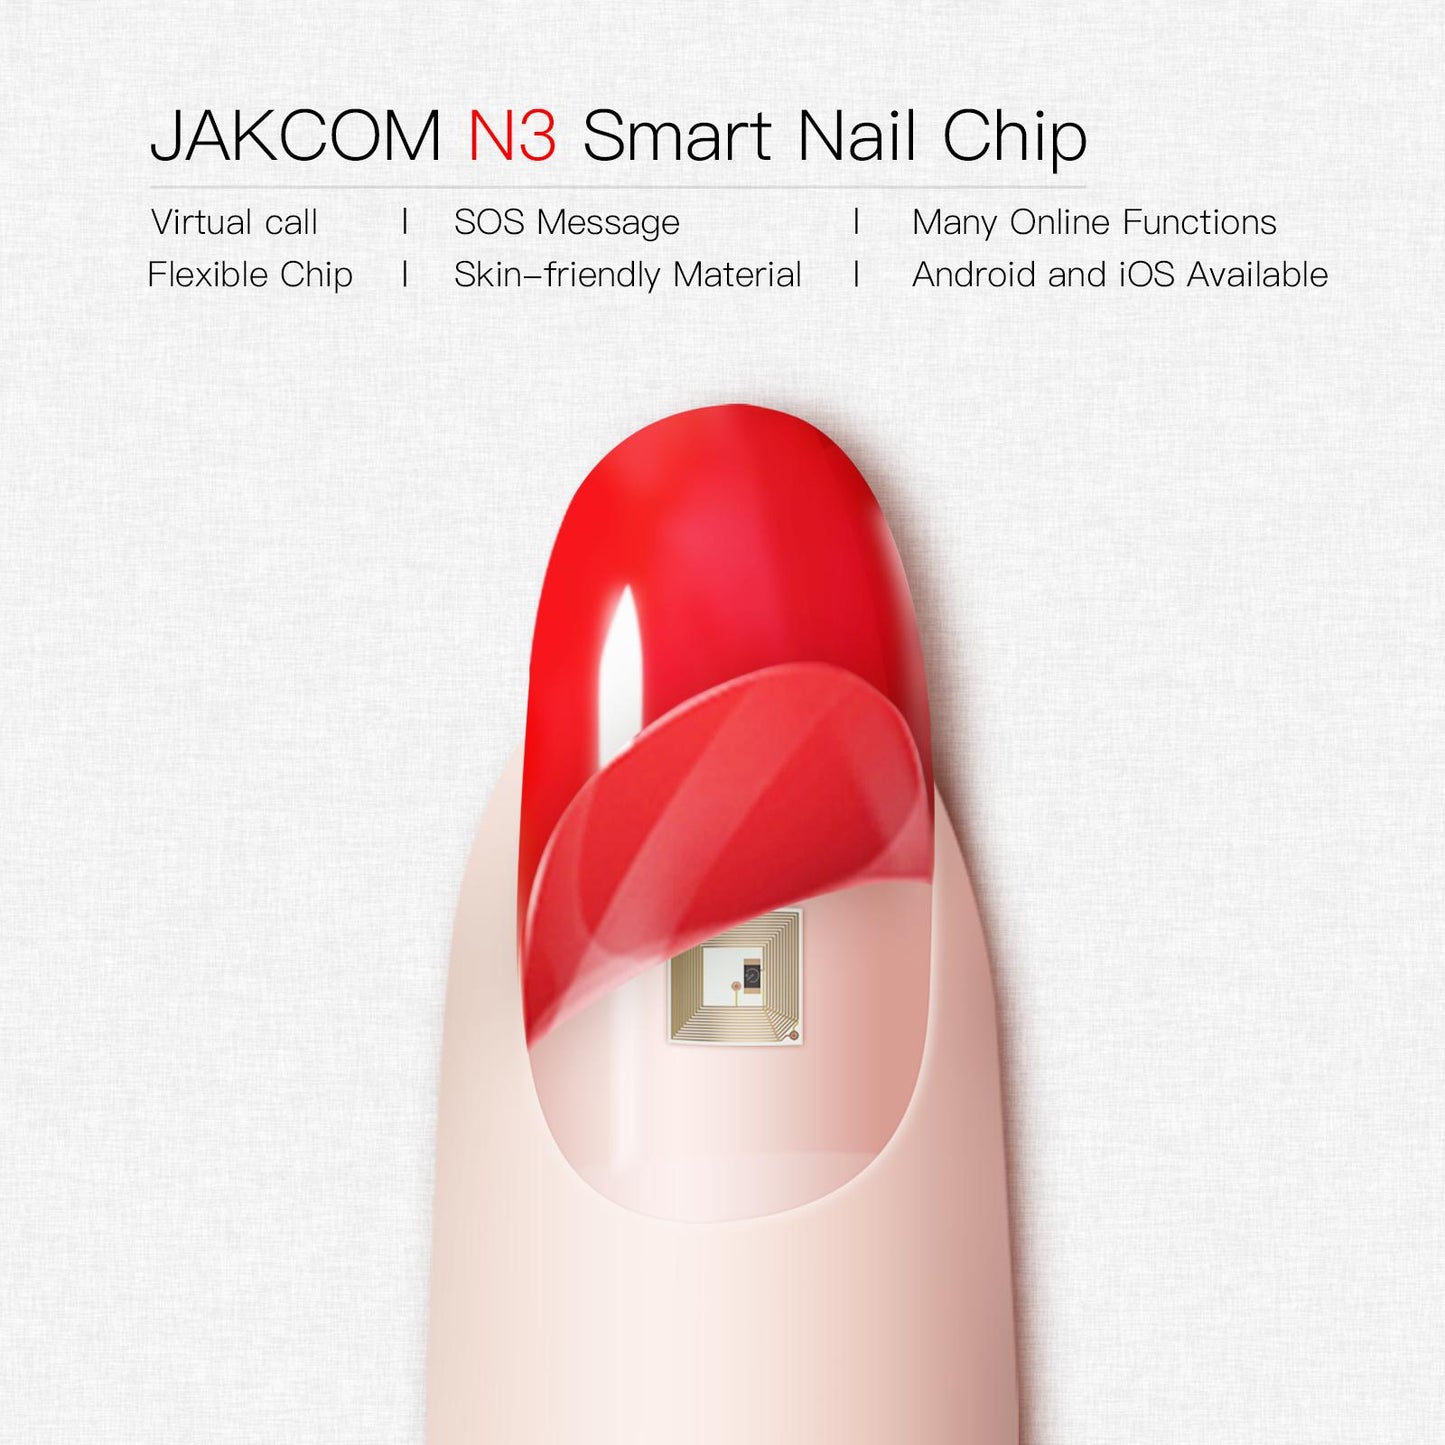 JAKCOM N3 Smart Nail Chip